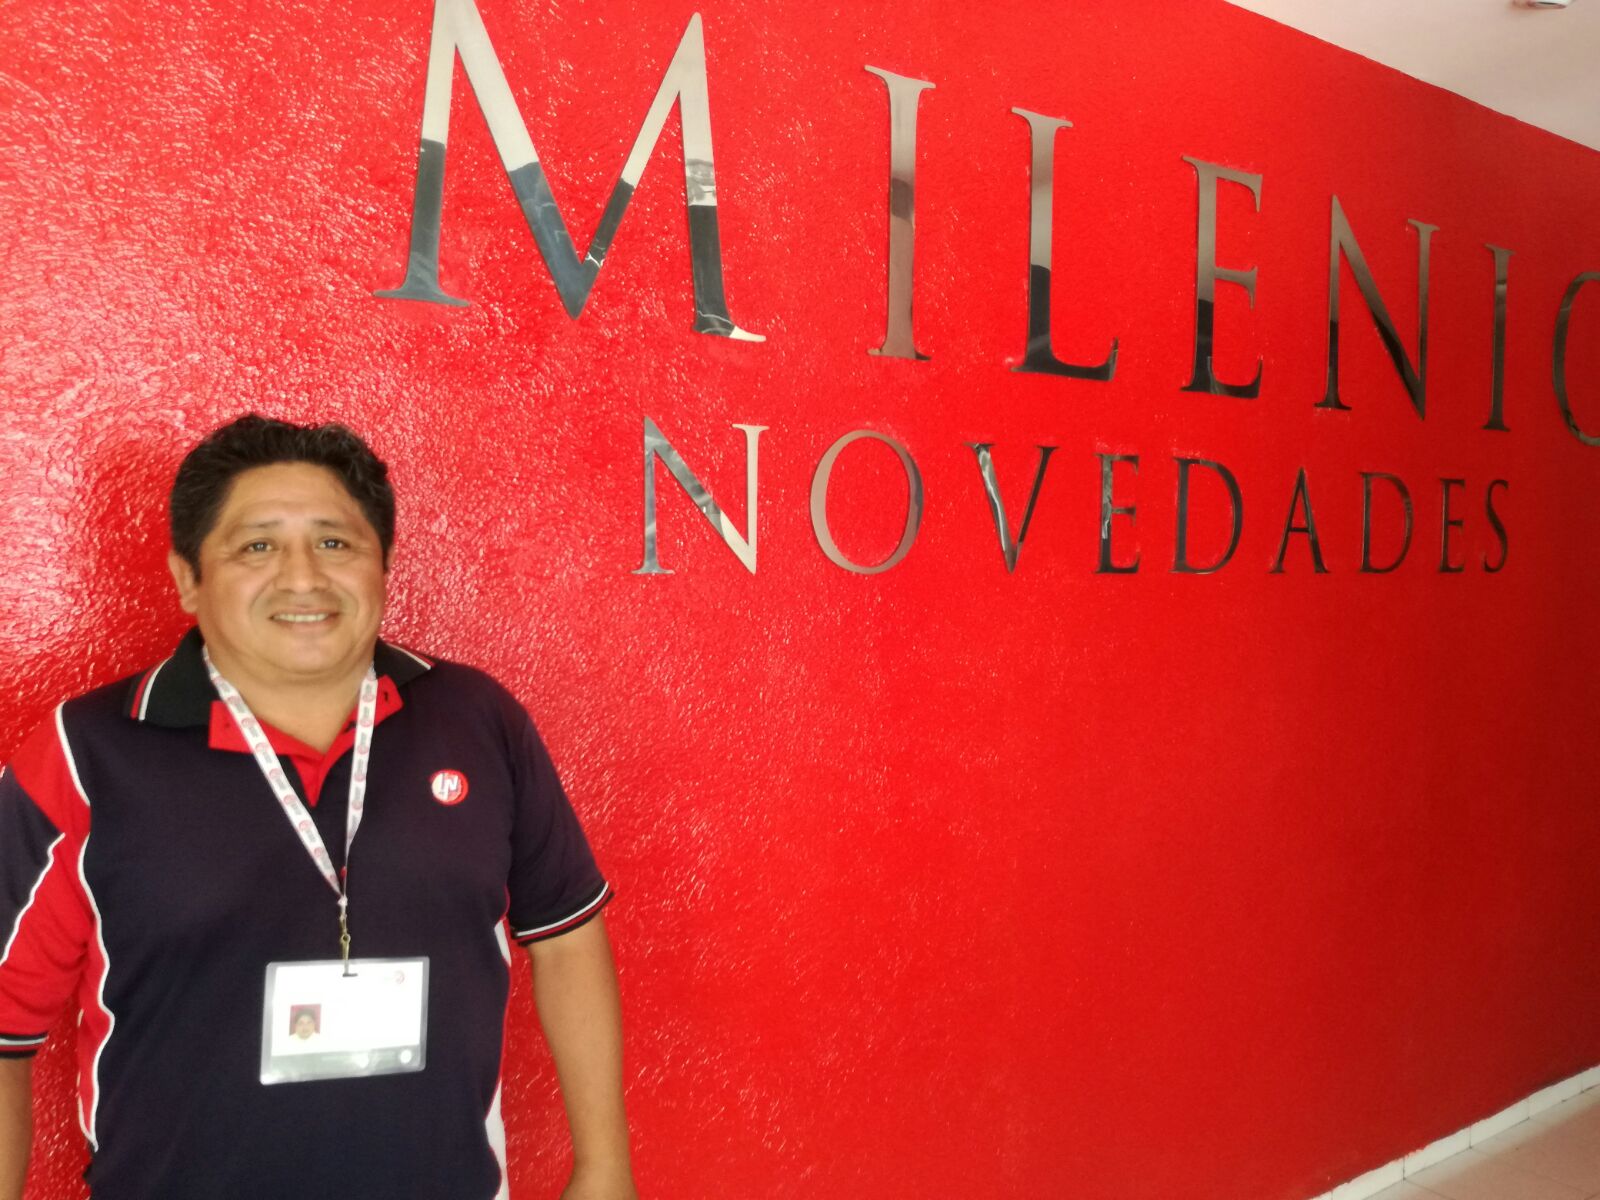 Cae otra vez premio gordo de Lotería Nacional en Yucatán